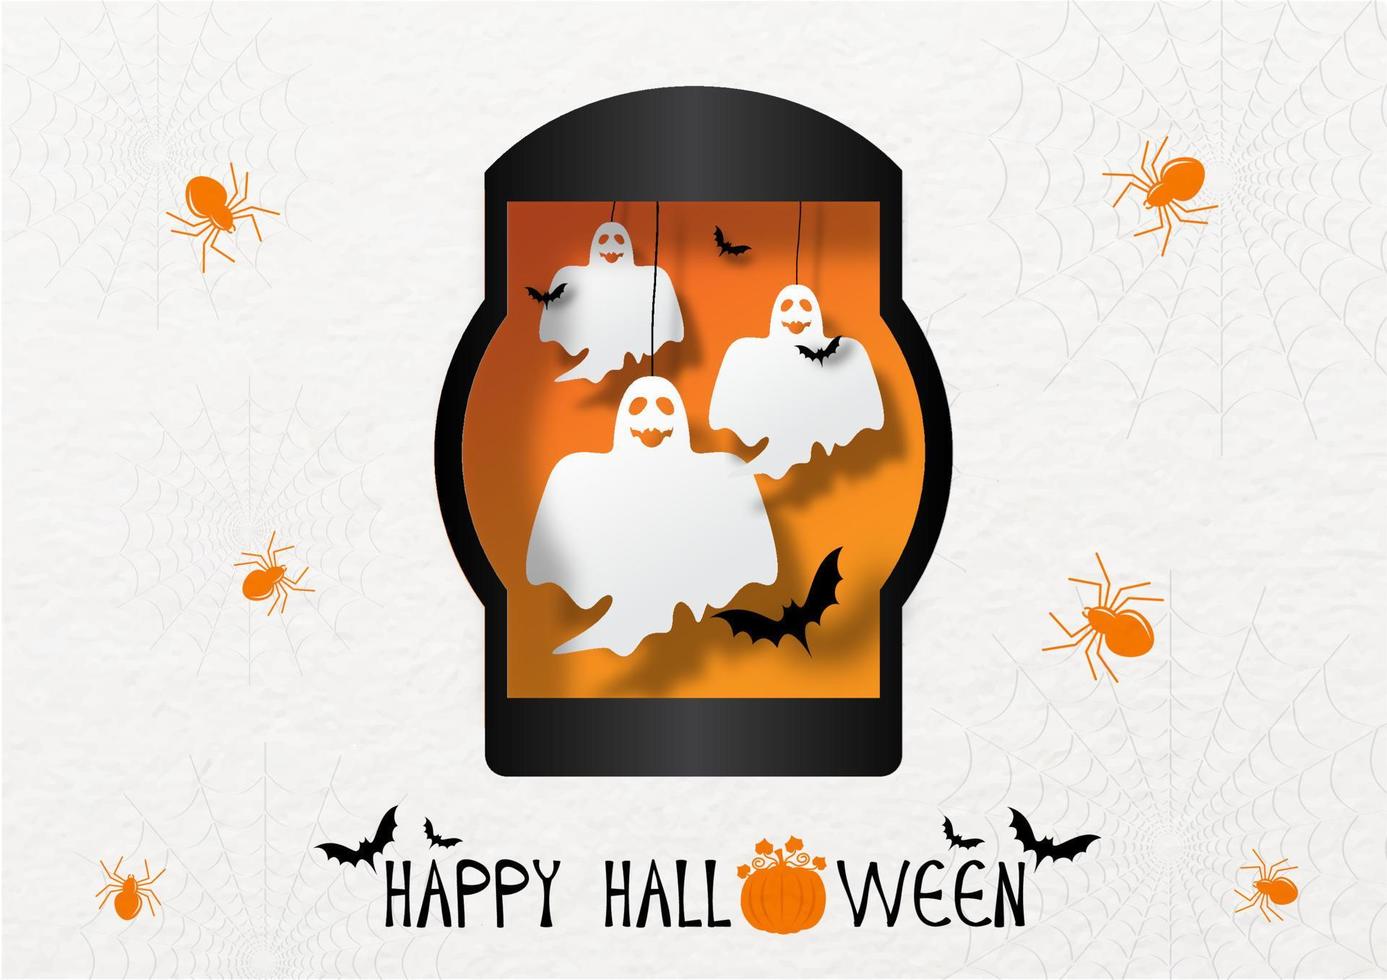 fantasmas de halloween en una linterna negra con murciélagos voladores y arañas naranjas con diseño de letras de feliz halloween en el fondo del patrón de papel. tarjeta de halloween en estilo de corte de papel. vector